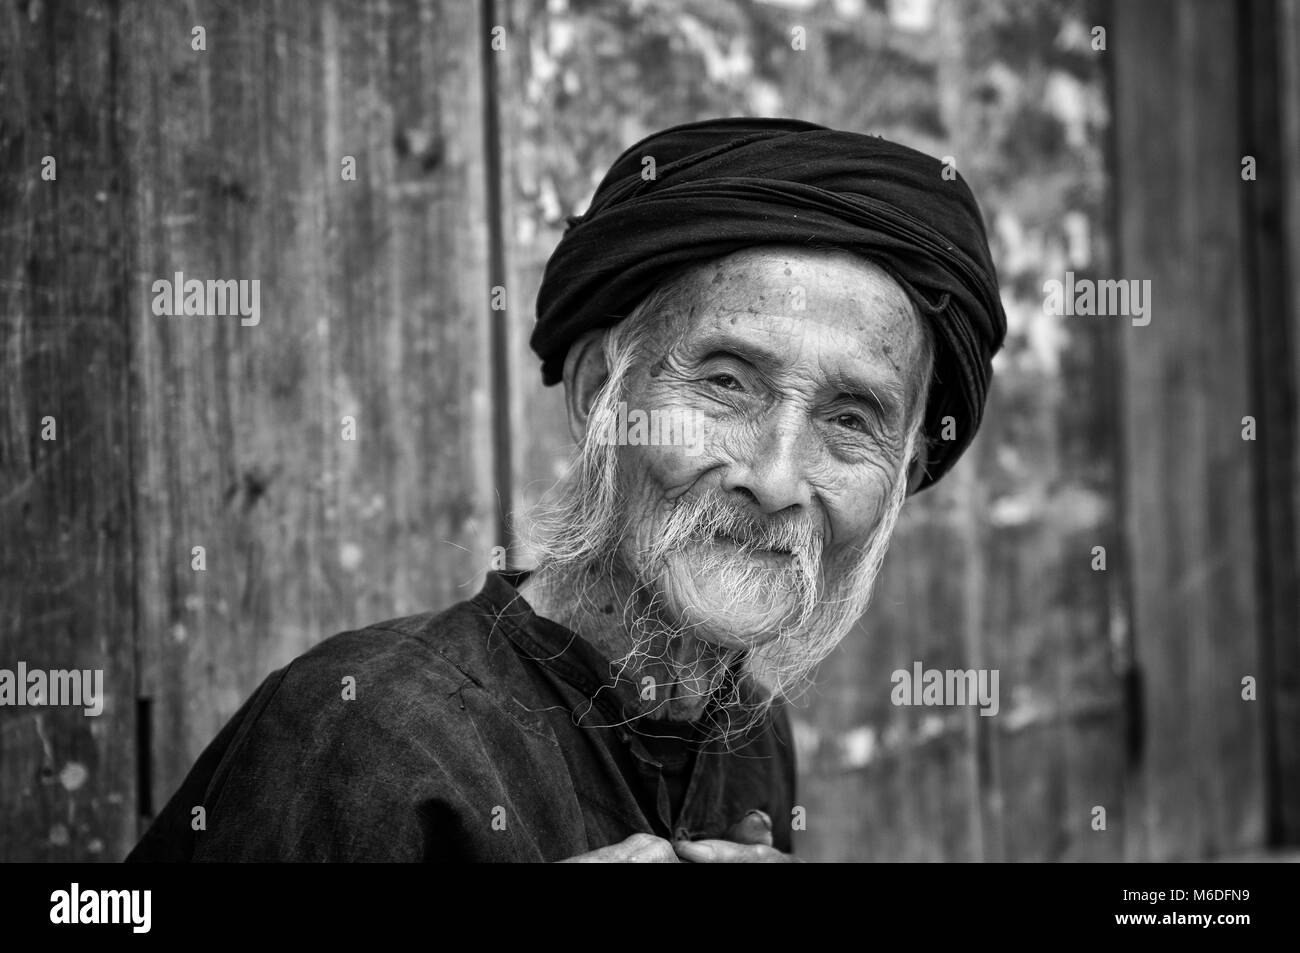 Dazhai, Chine - Août 4, 2012 : Portrait d'un vieil homme chinois dans le village de Dazhai en Chine, Asie Banque D'Images